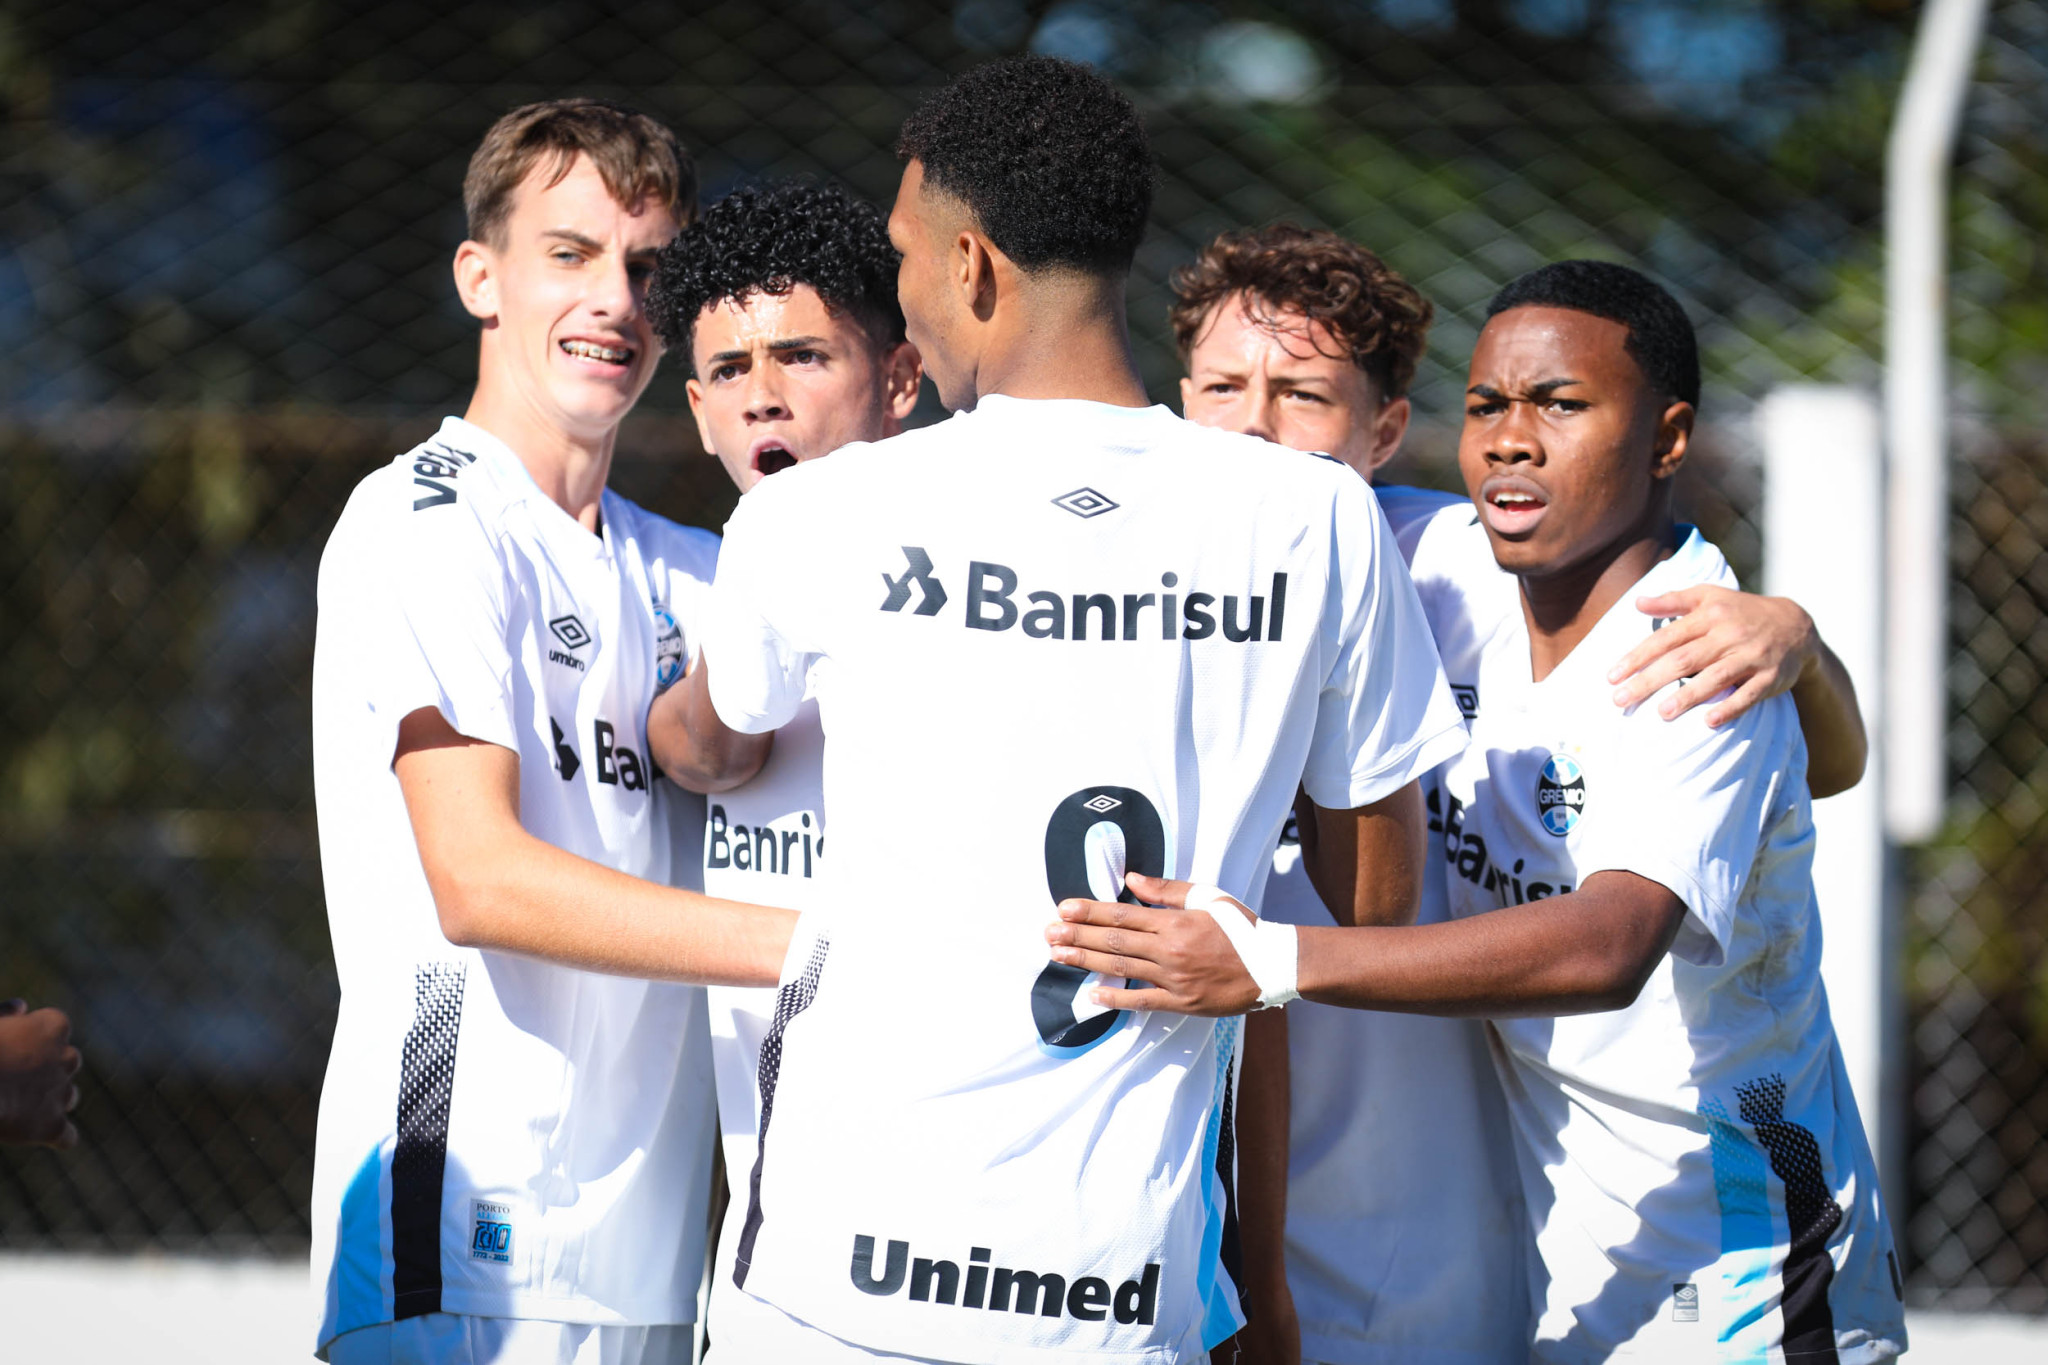 Tombense vs Sport Recife: A Clash of Talents